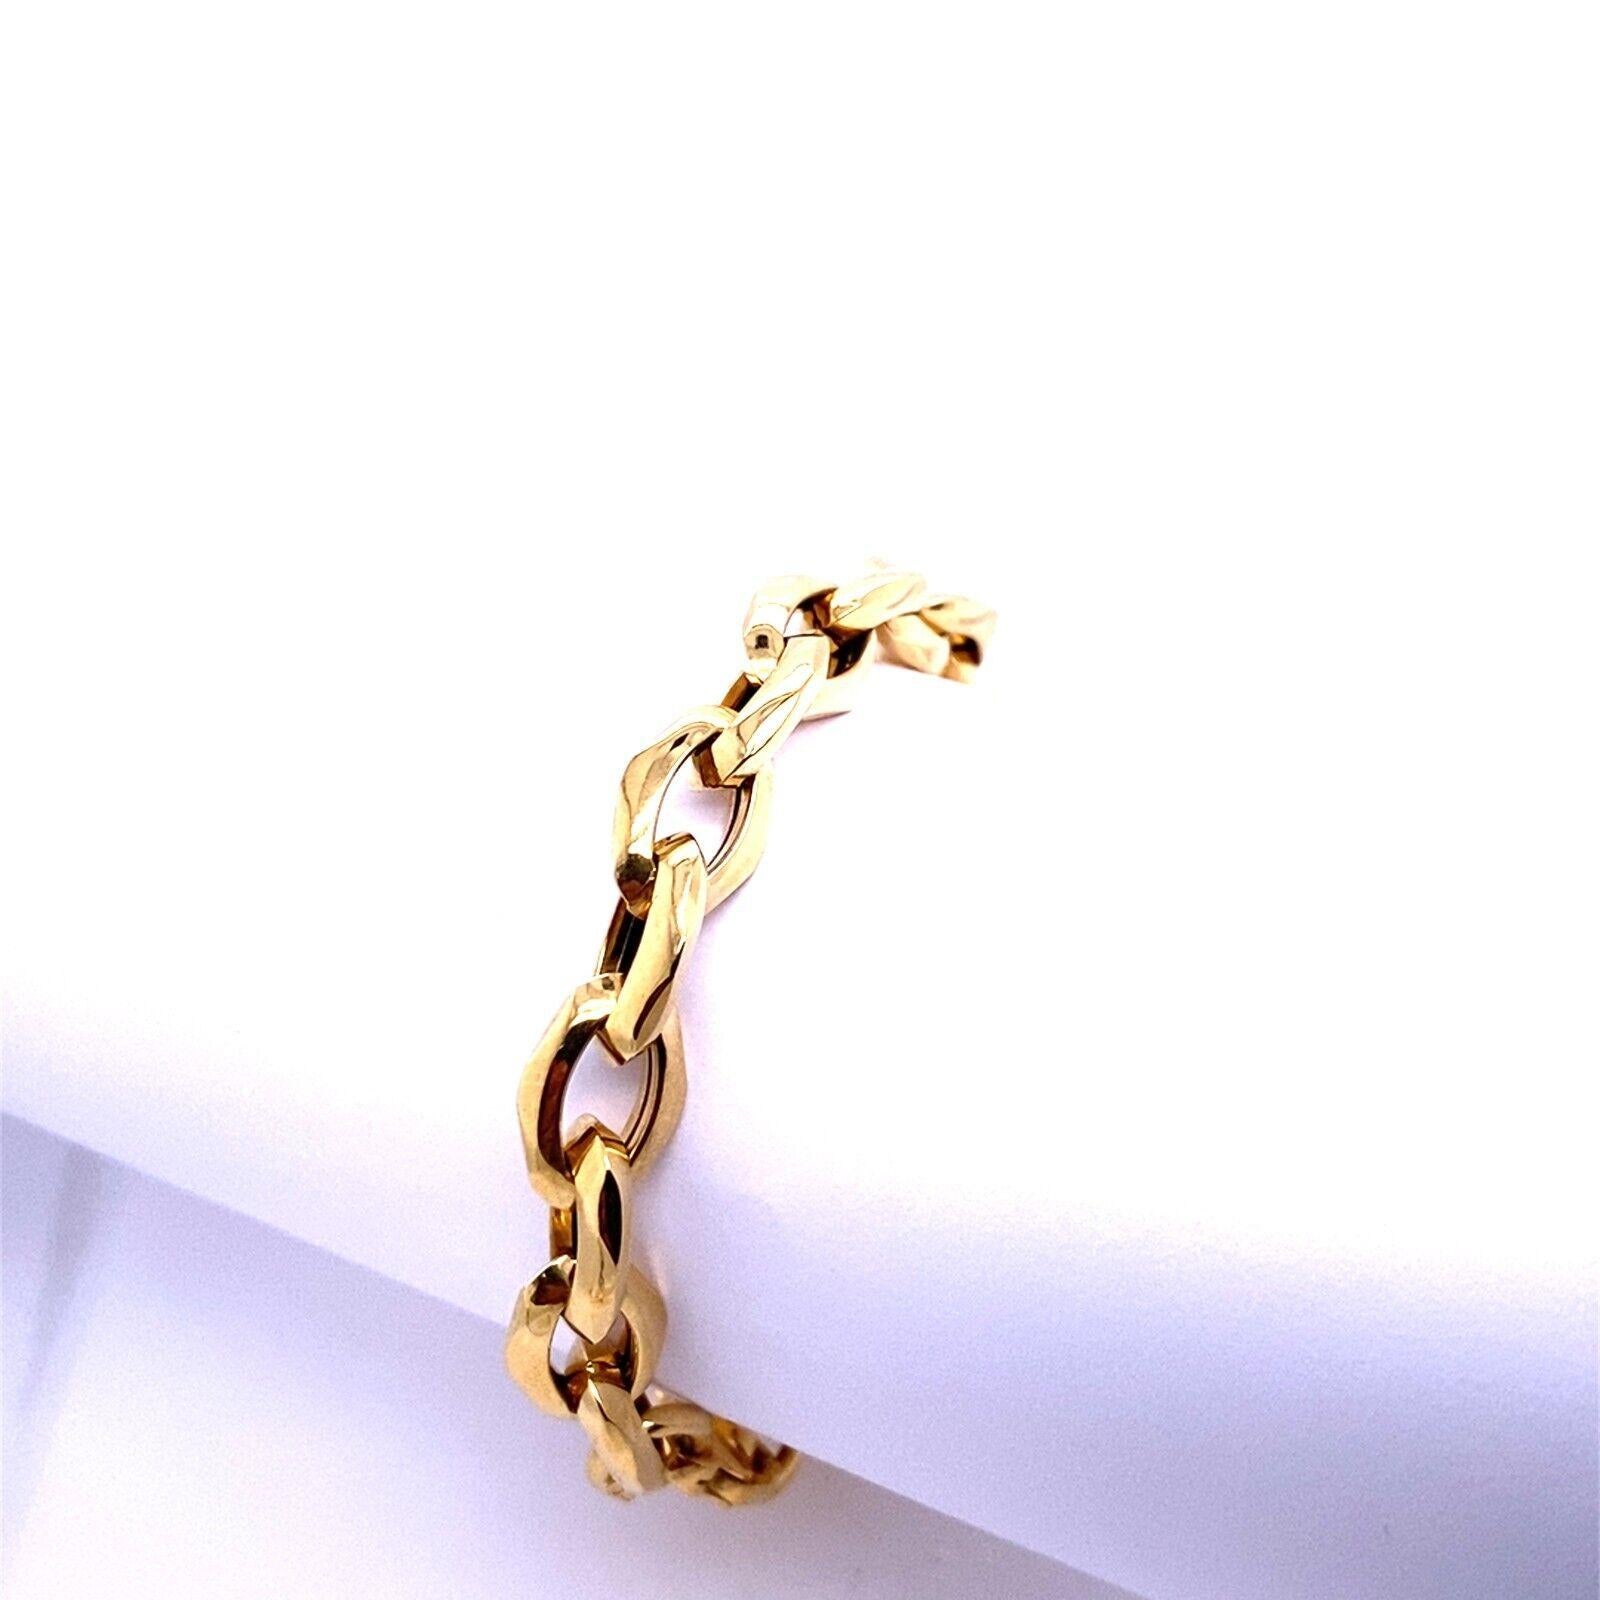 Bracelet avec fermoir mousqueton en or jaune 18ct

Un bracelet qui sera toujours à la mode, grâce à son design élégant. Le bracelet est en or jaune 18ct et possède un fermoir à mousqueton.

Informations supplémentaires :
Longueur du bracelet : 7